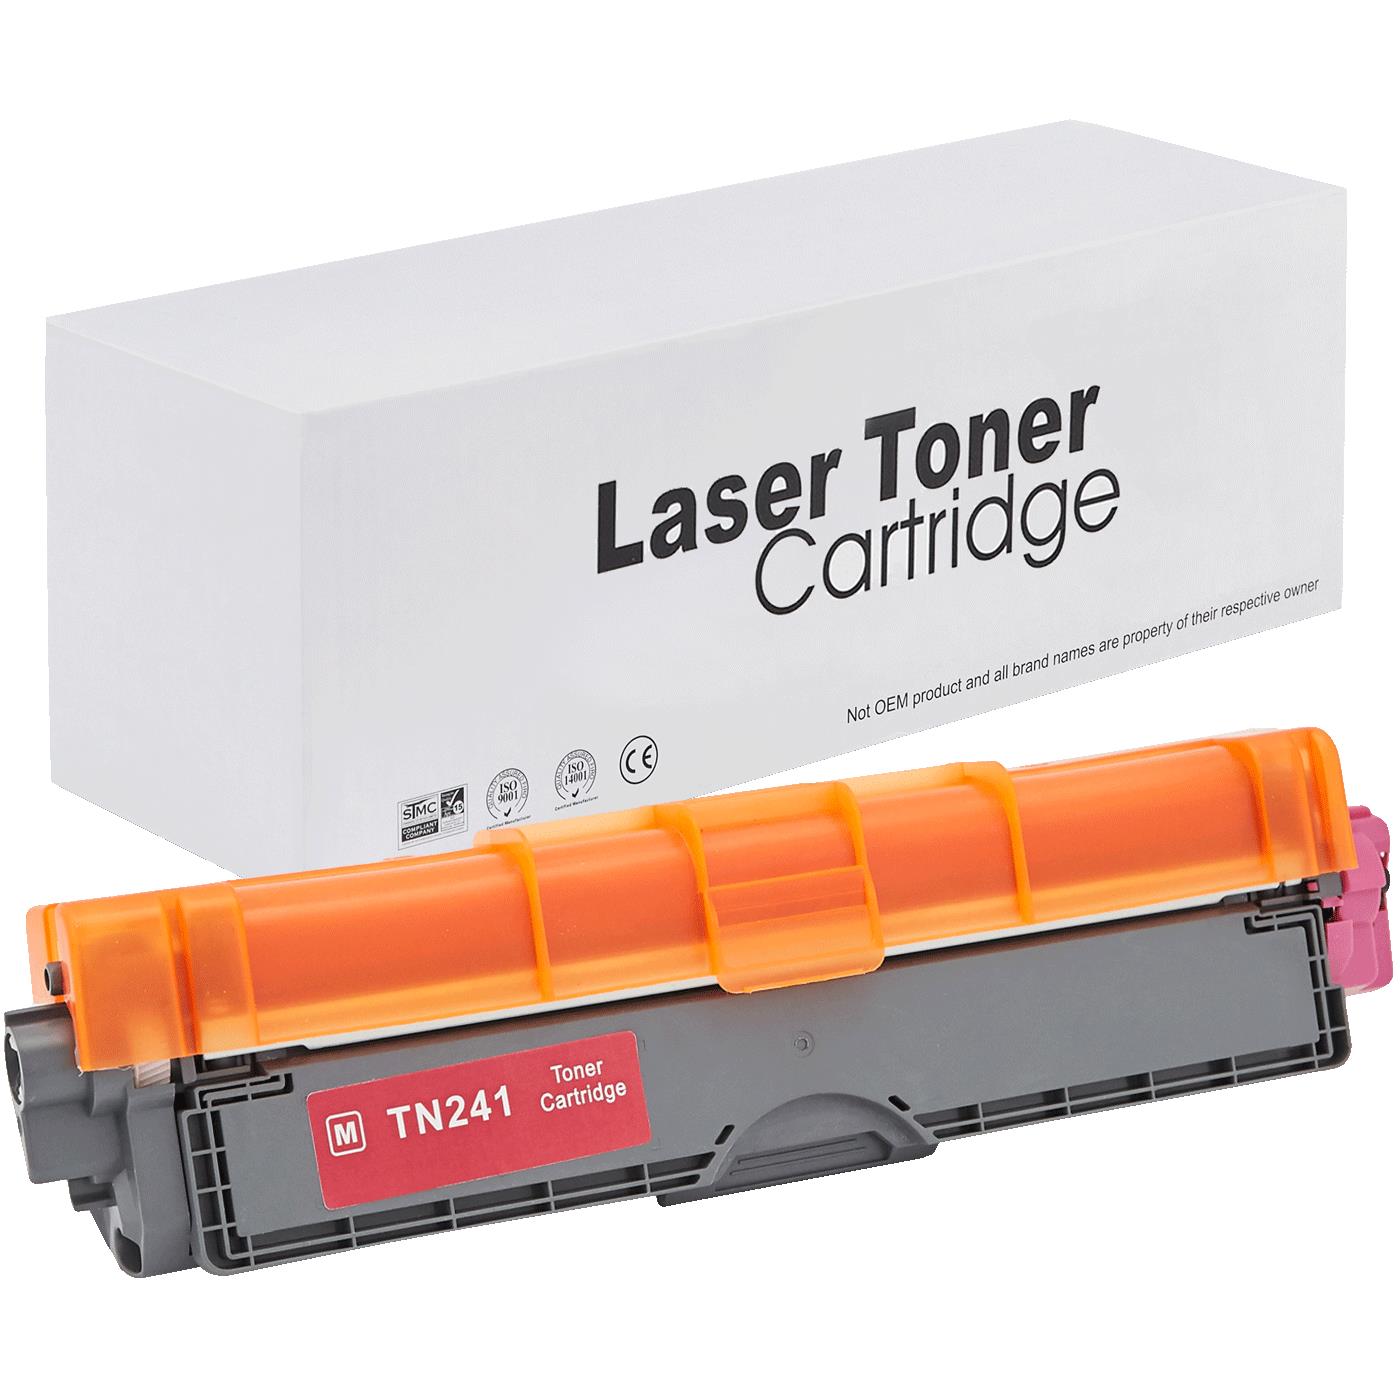 съвместима тонер касета за принтери и печатащи устройства на Brother MFC-9140 CDN Toner BR-241M | TN241M. Ниски цени, прецизно изпълнение, високо качество.